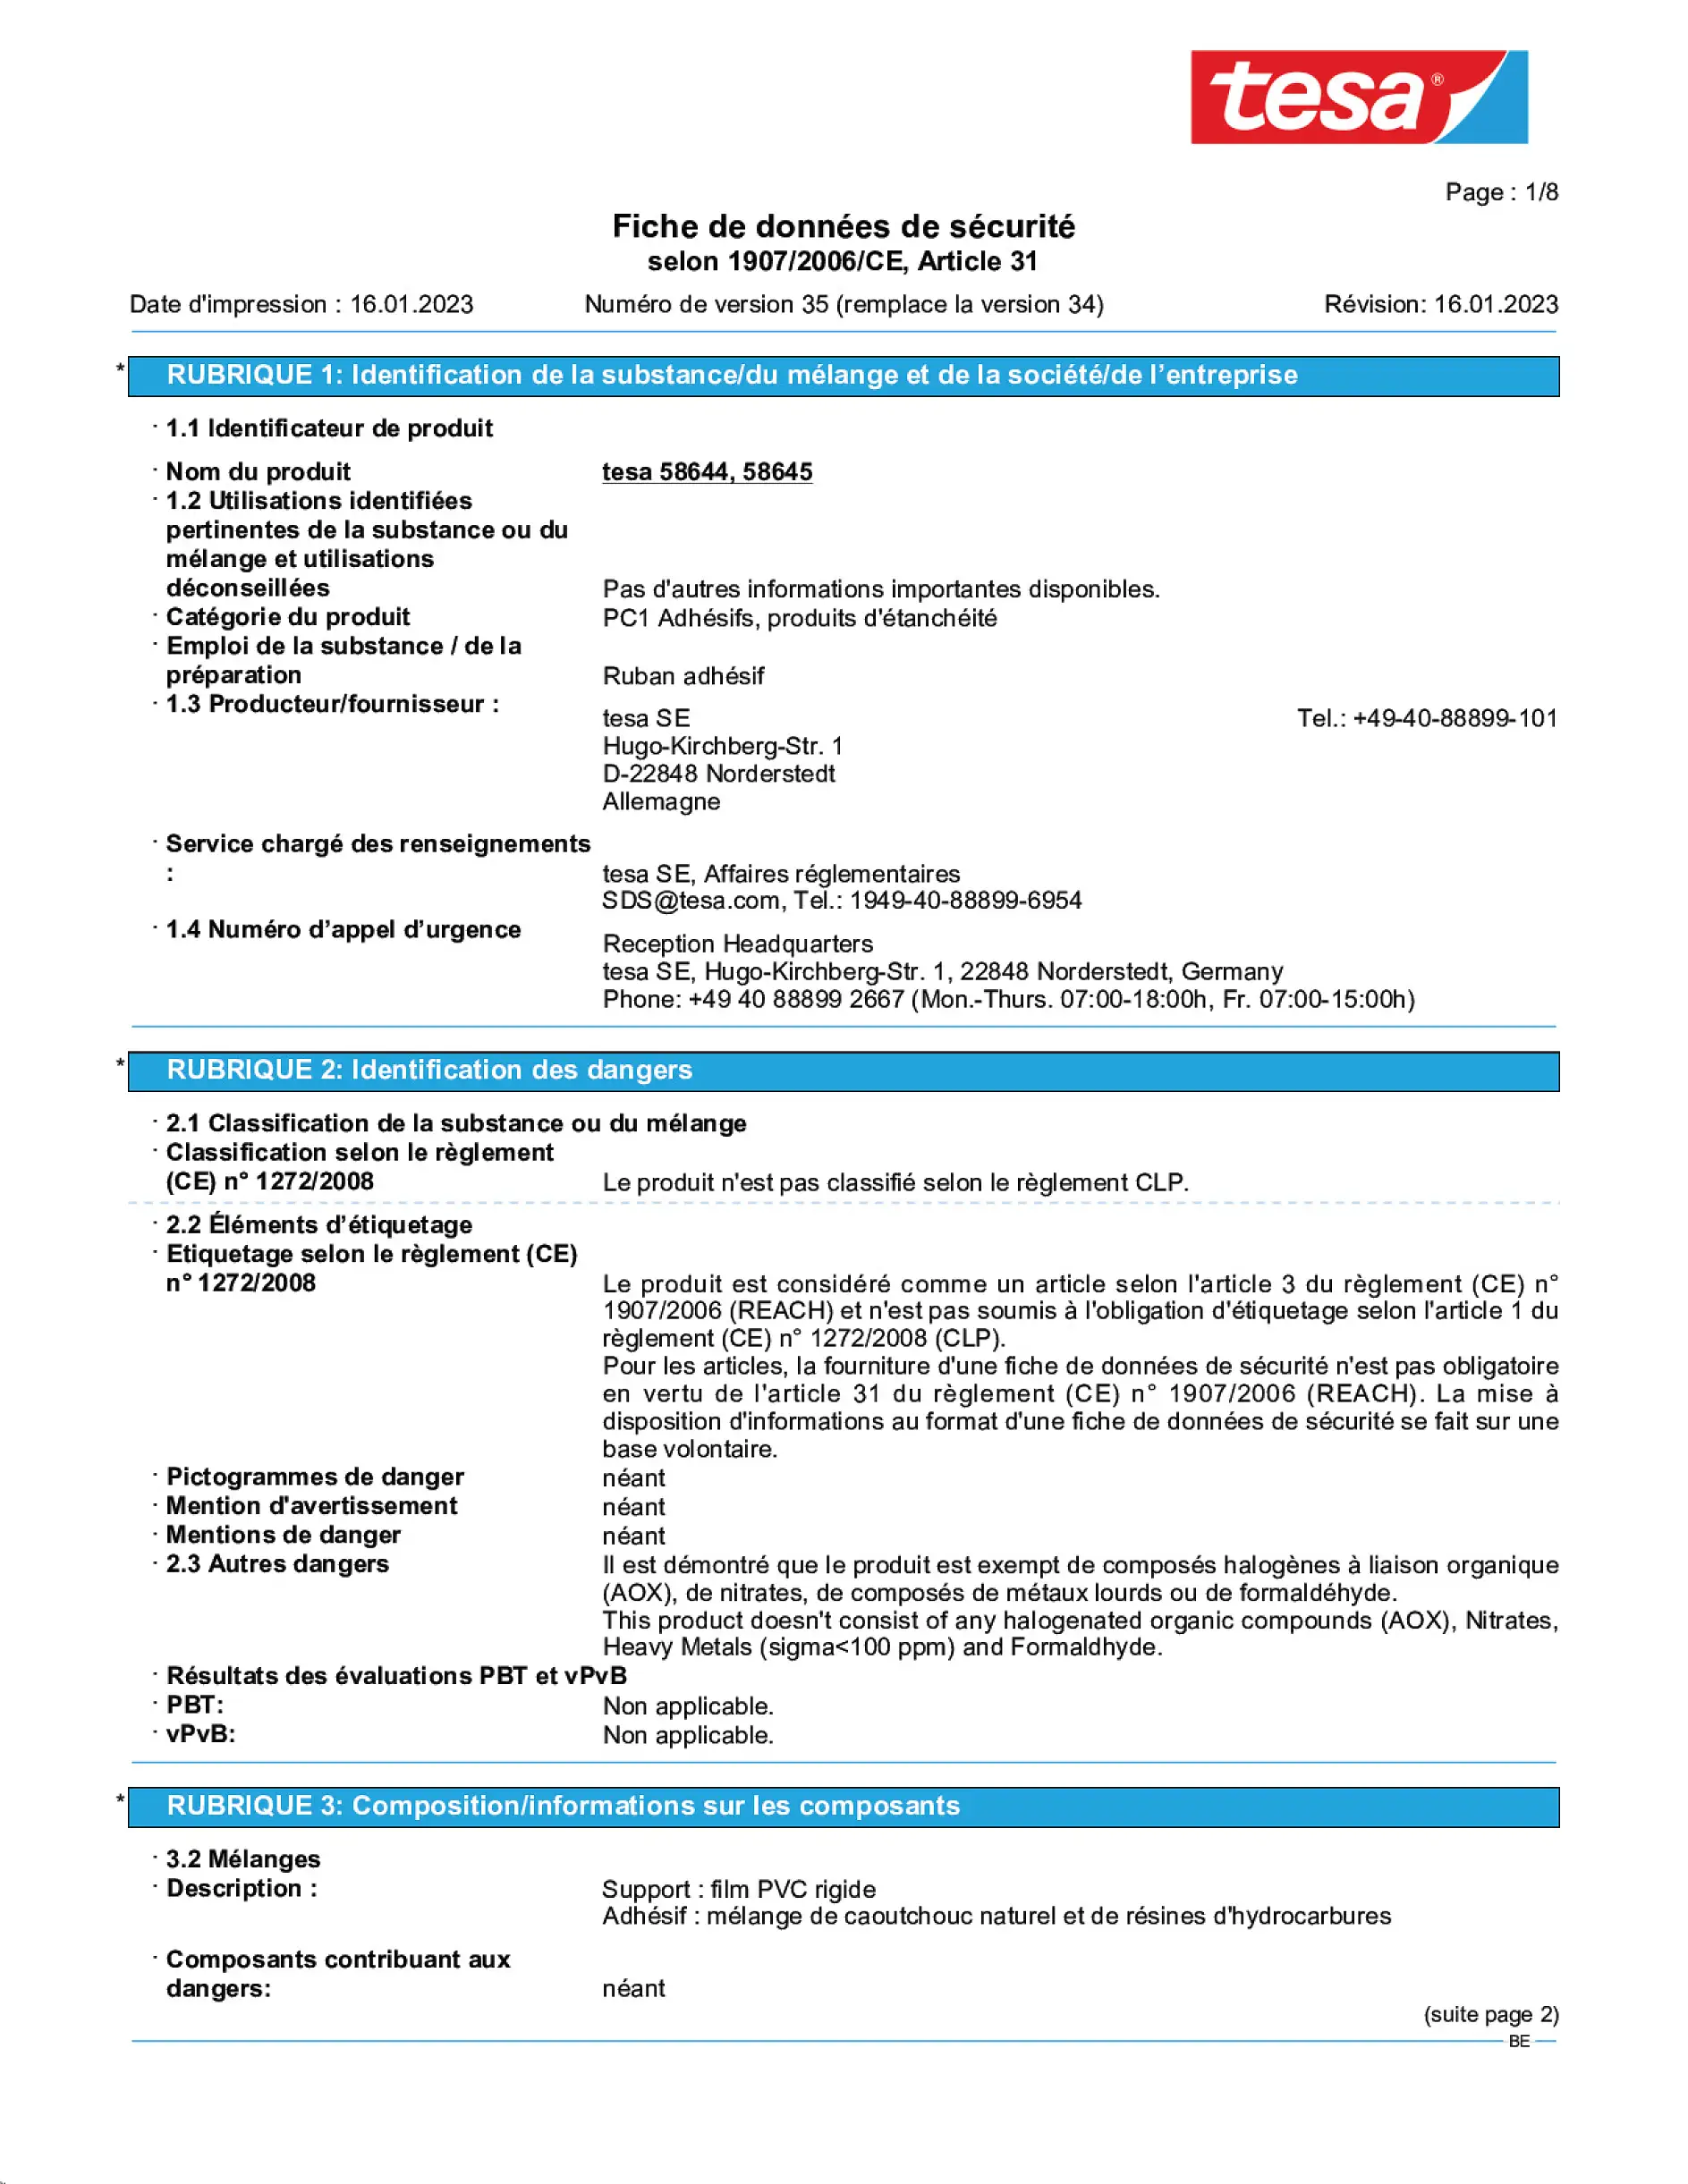 Safety data sheet_tesapack® 4124PVC30_nl-BE_v35